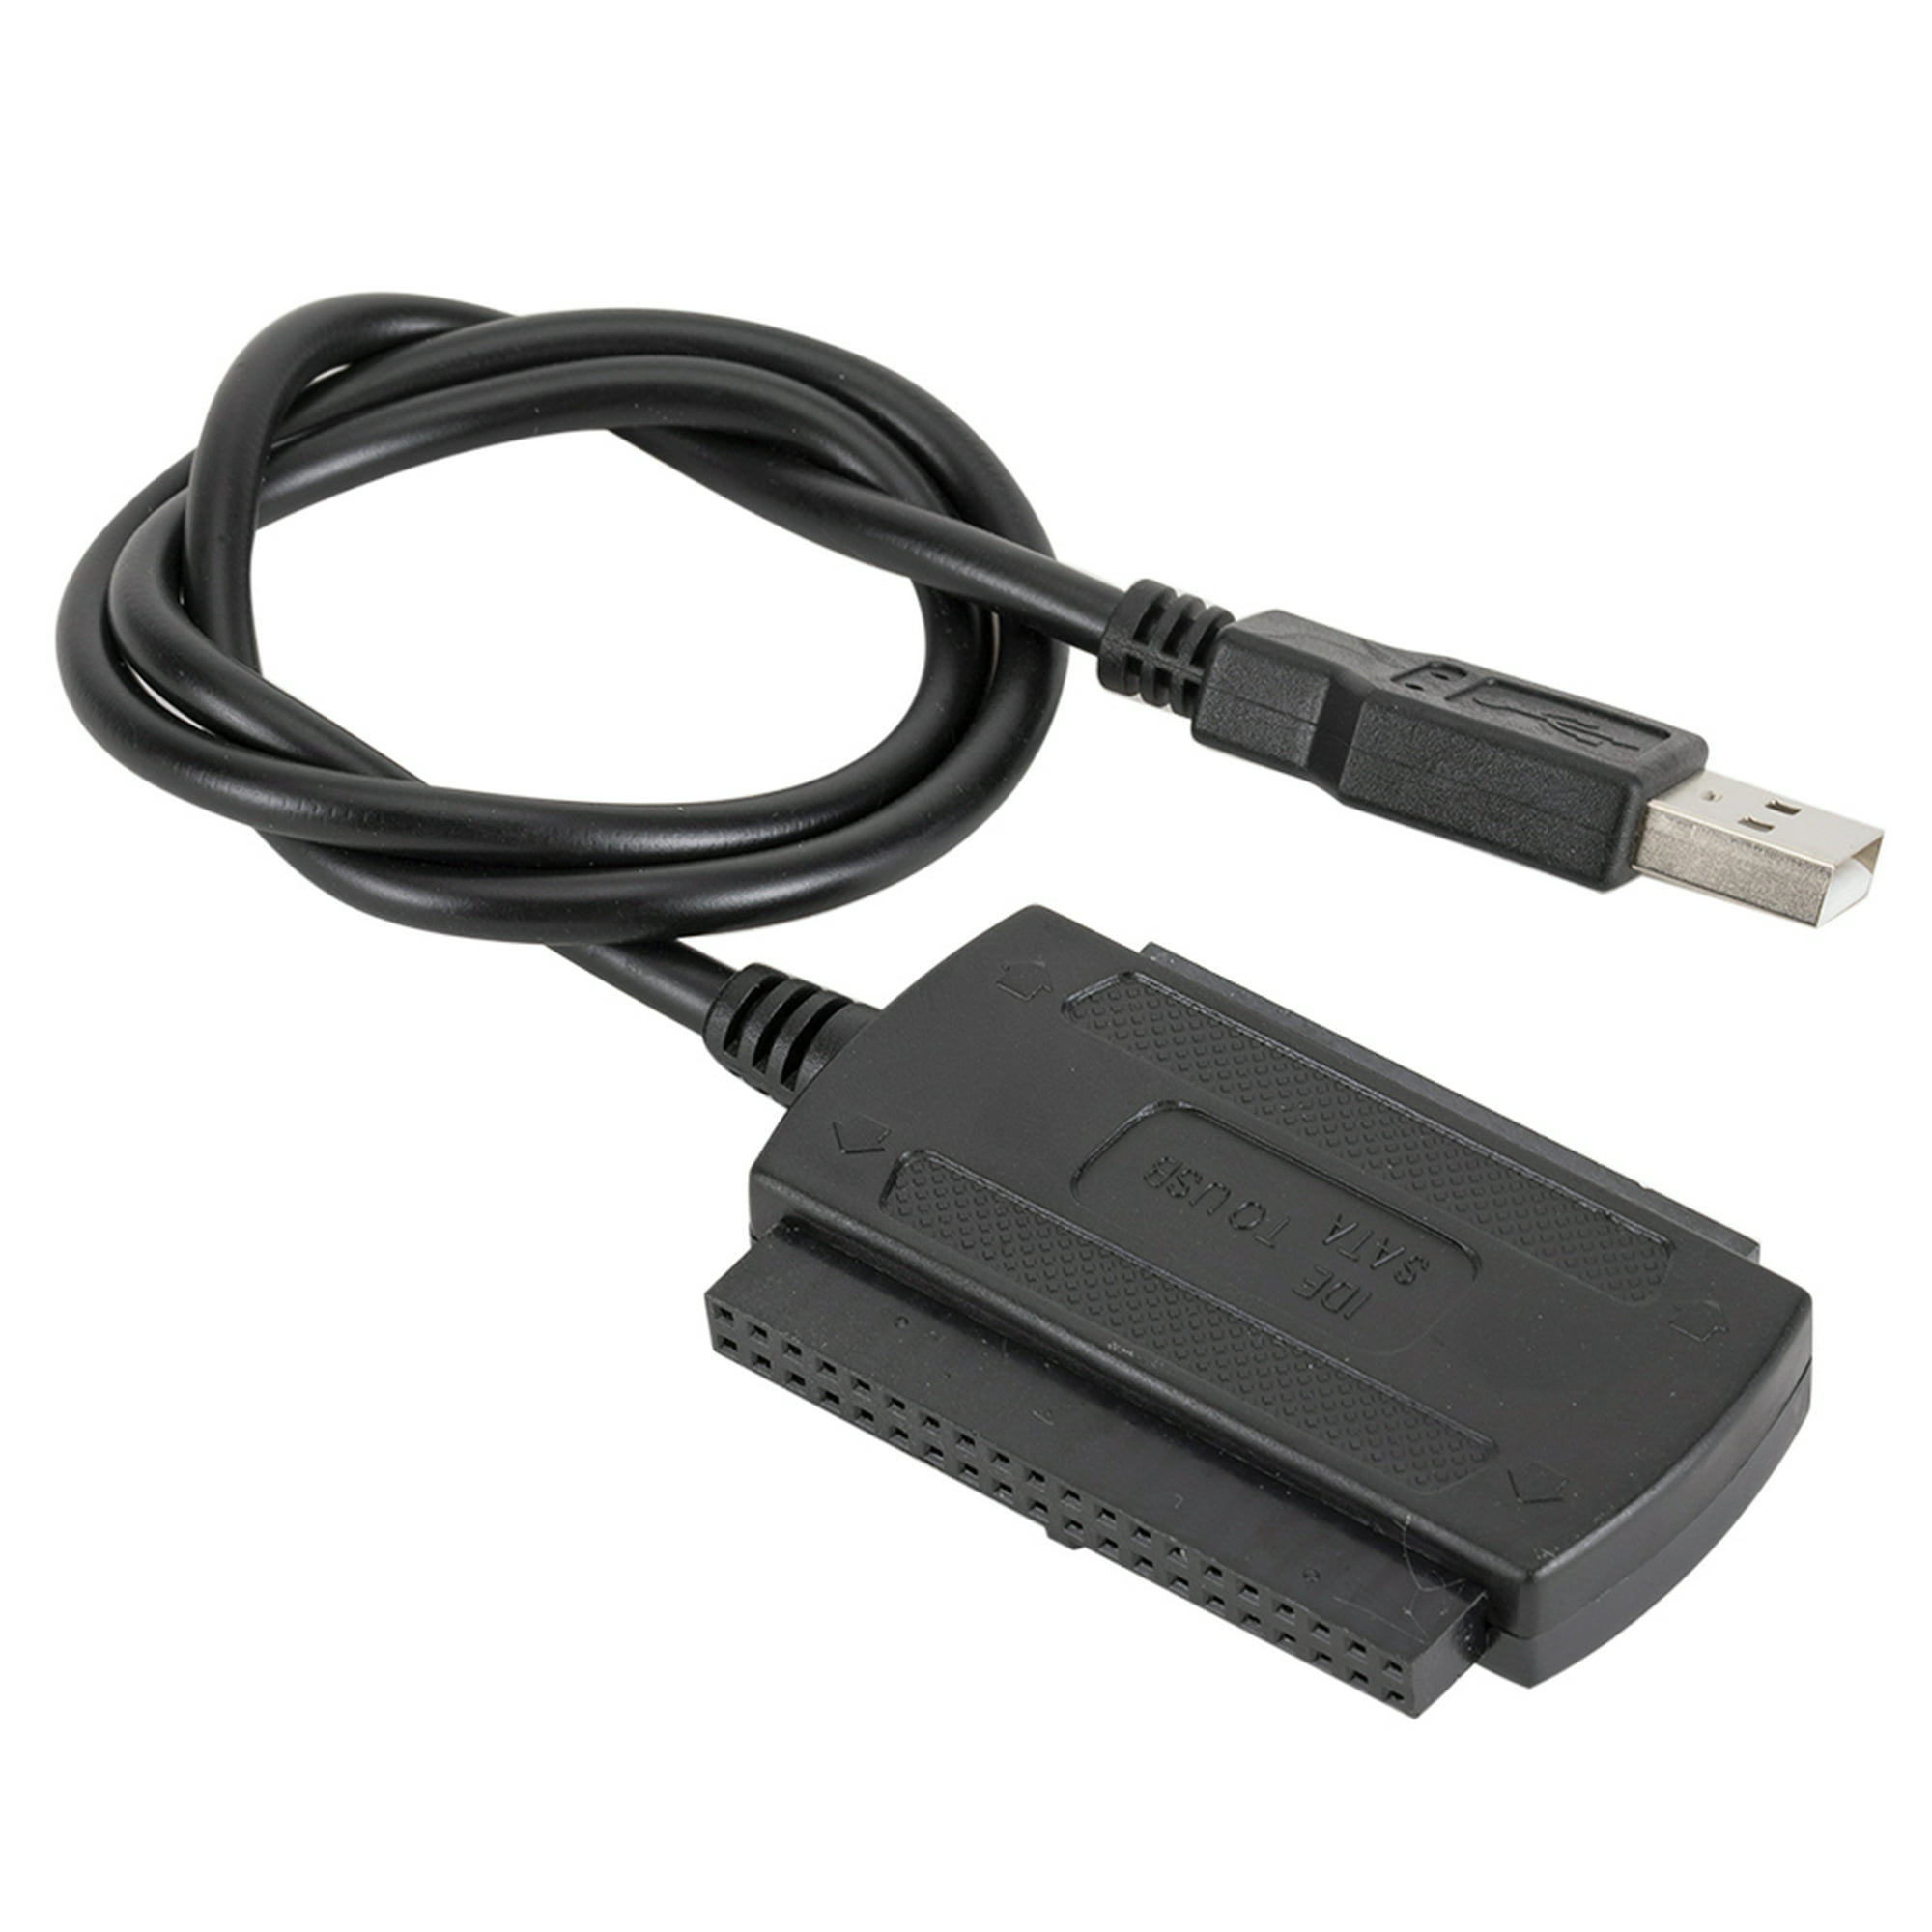 Costa Ladrillo violación Cable Cable de datos Kit de cable adaptador de disco duro USB 2.0 a SATA  PATA IDE con adaptador de corriente de la UE Likrtyny Para estrenar |  Walmart en línea